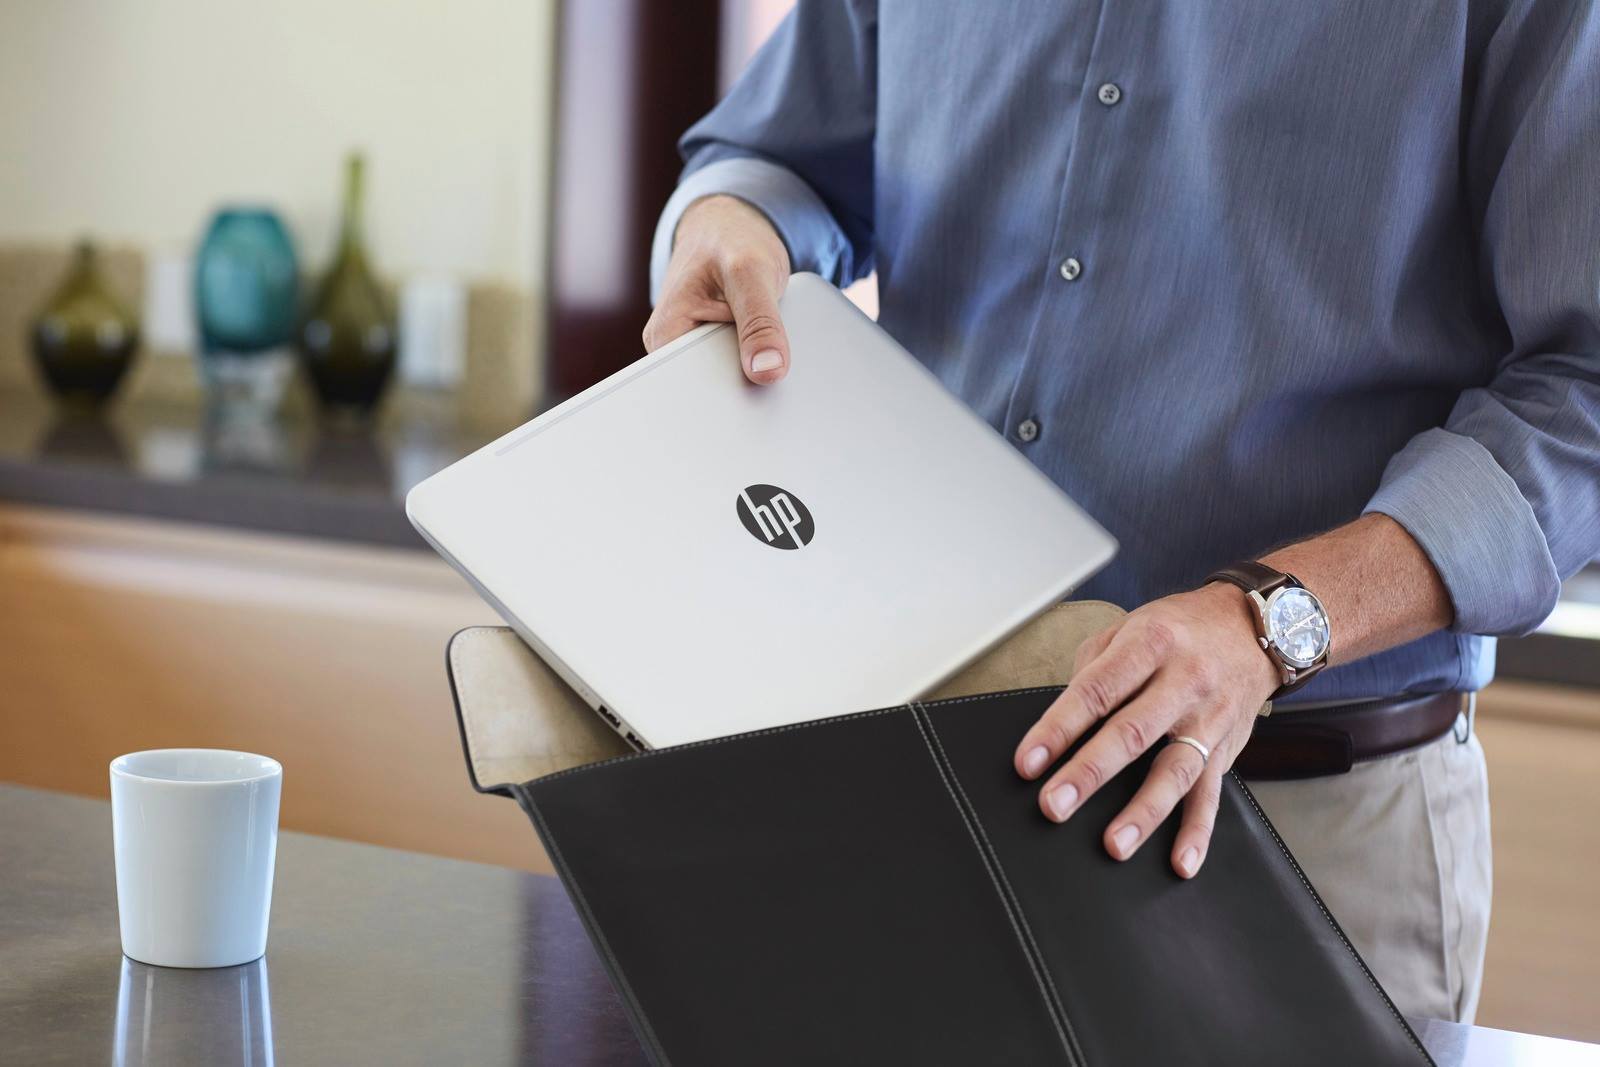 Laptop HP Envy 13 được làm từ hợp kim nhôm, tạo nên vẻ ngoài sang trọng, đẳng cấp 